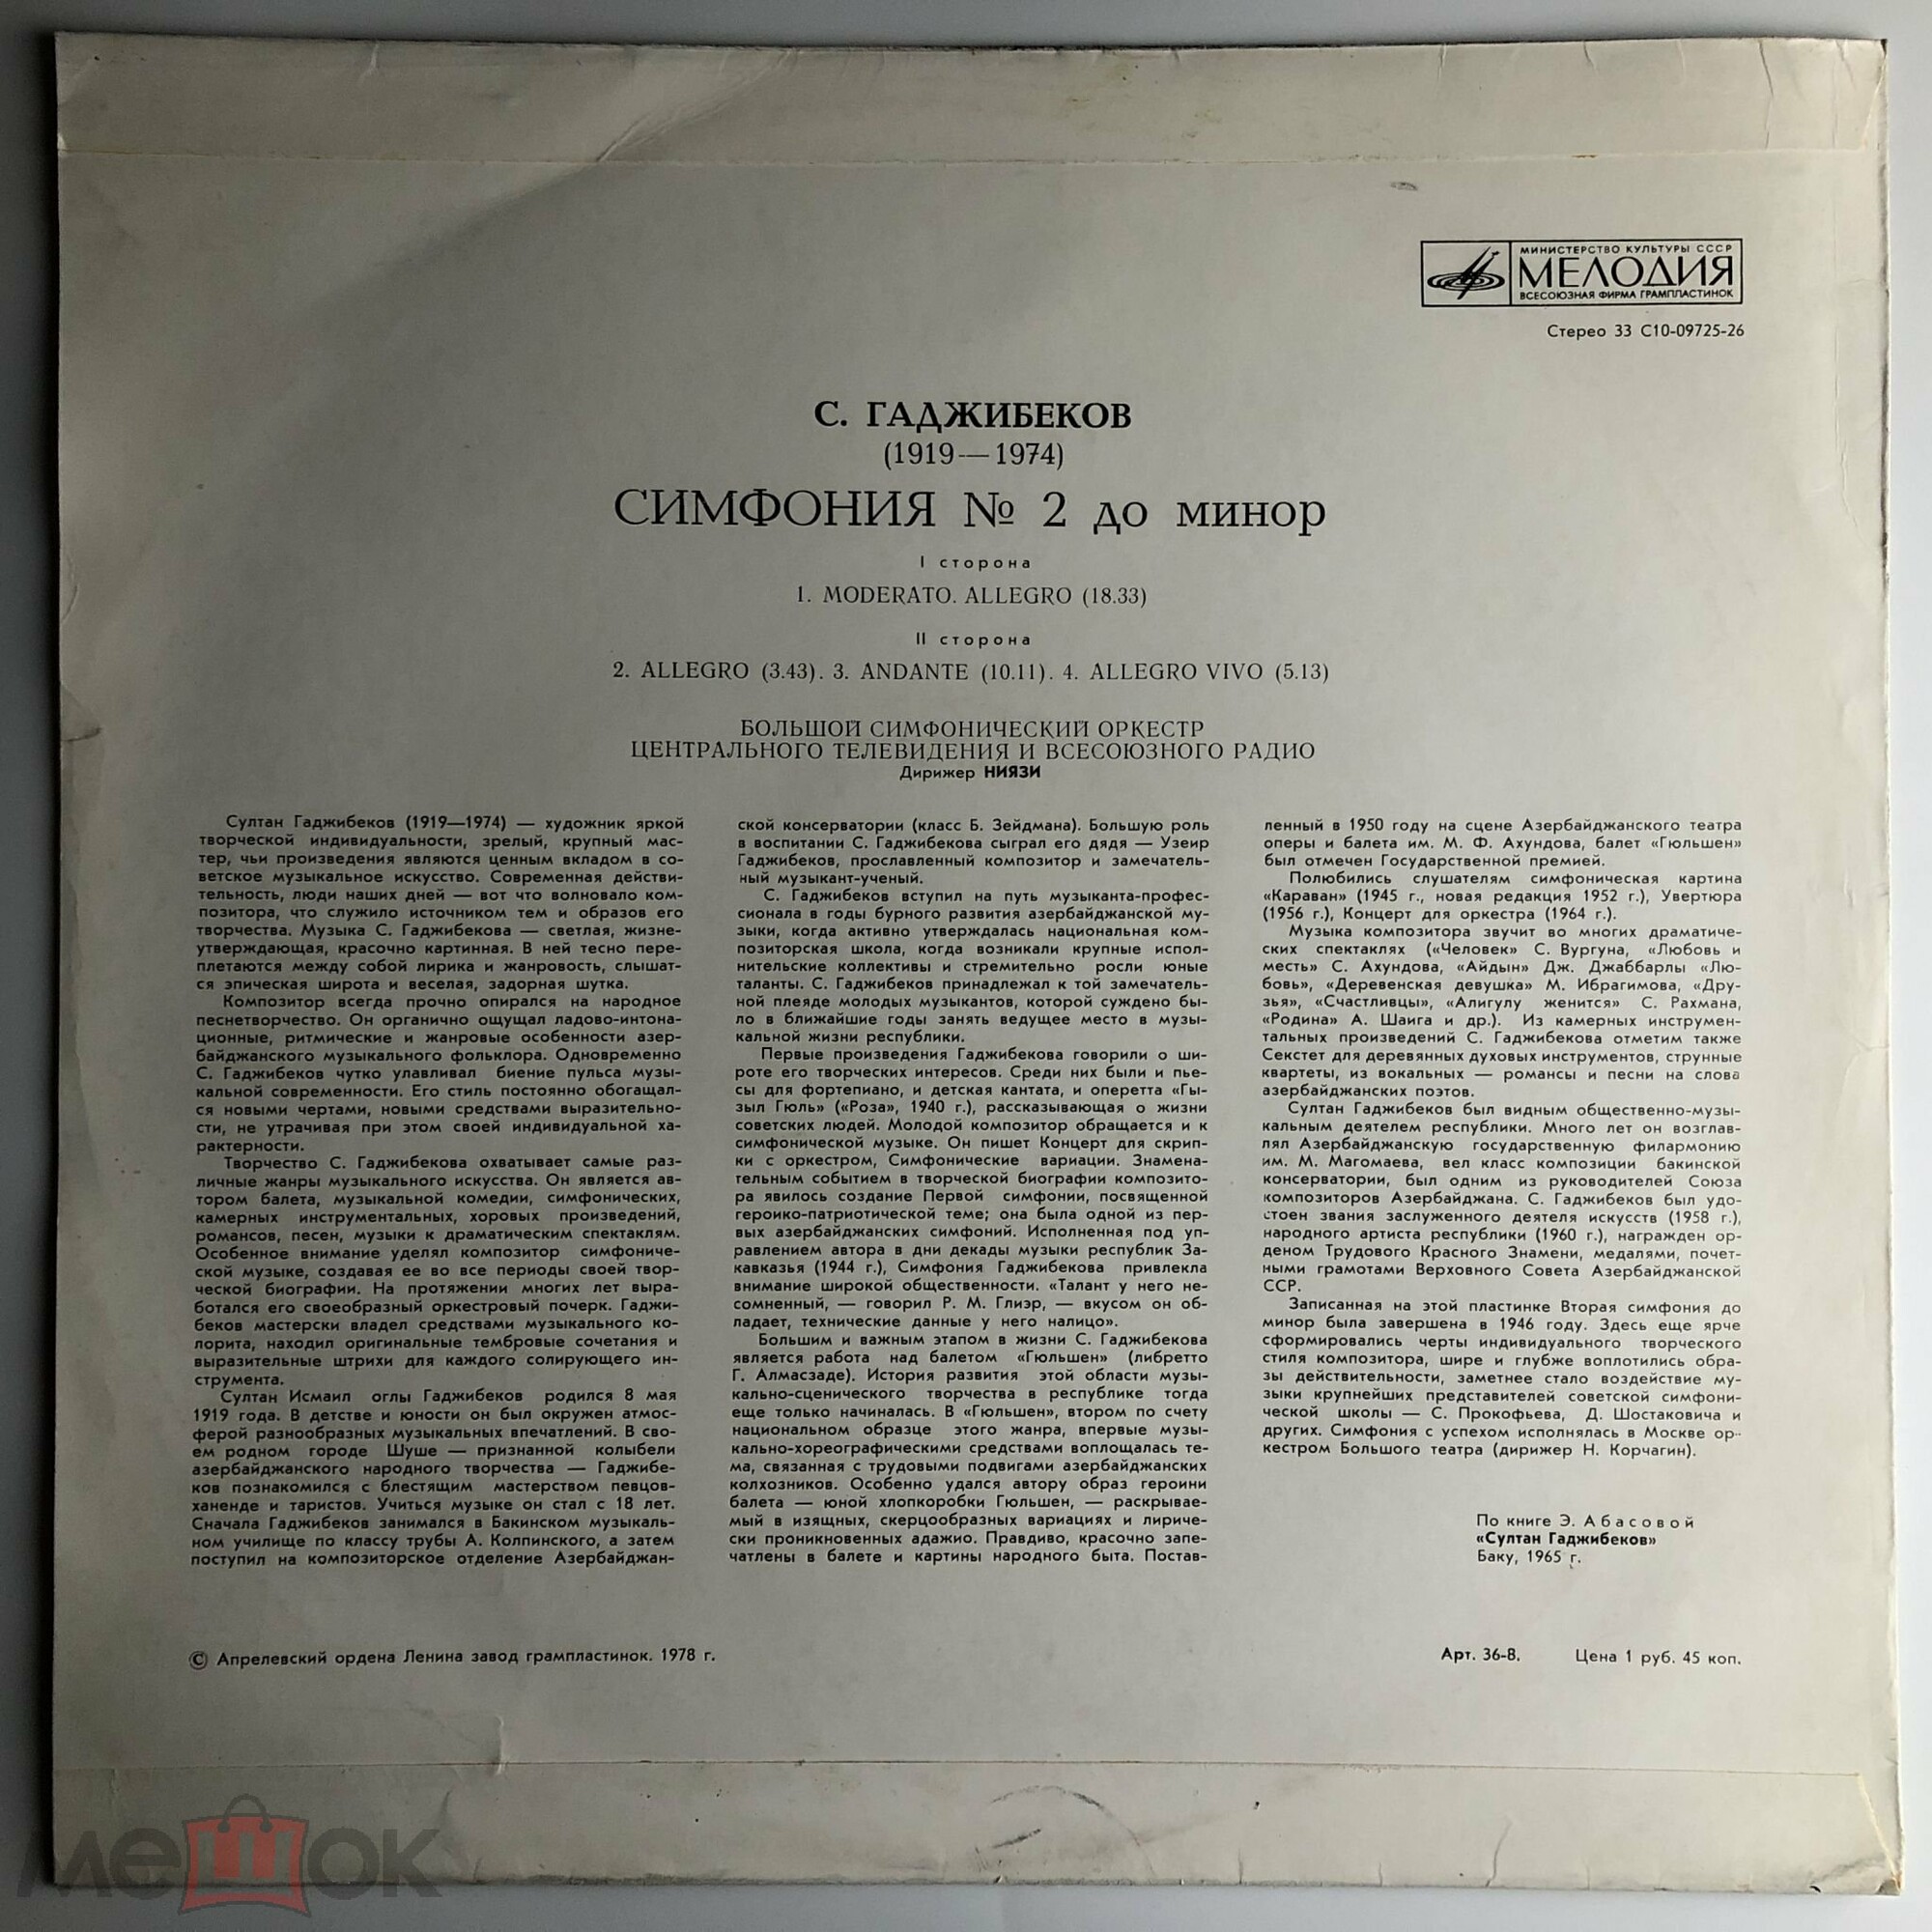 С. ГАДЖИБЕКОВ (1919-1974): Симфония №2